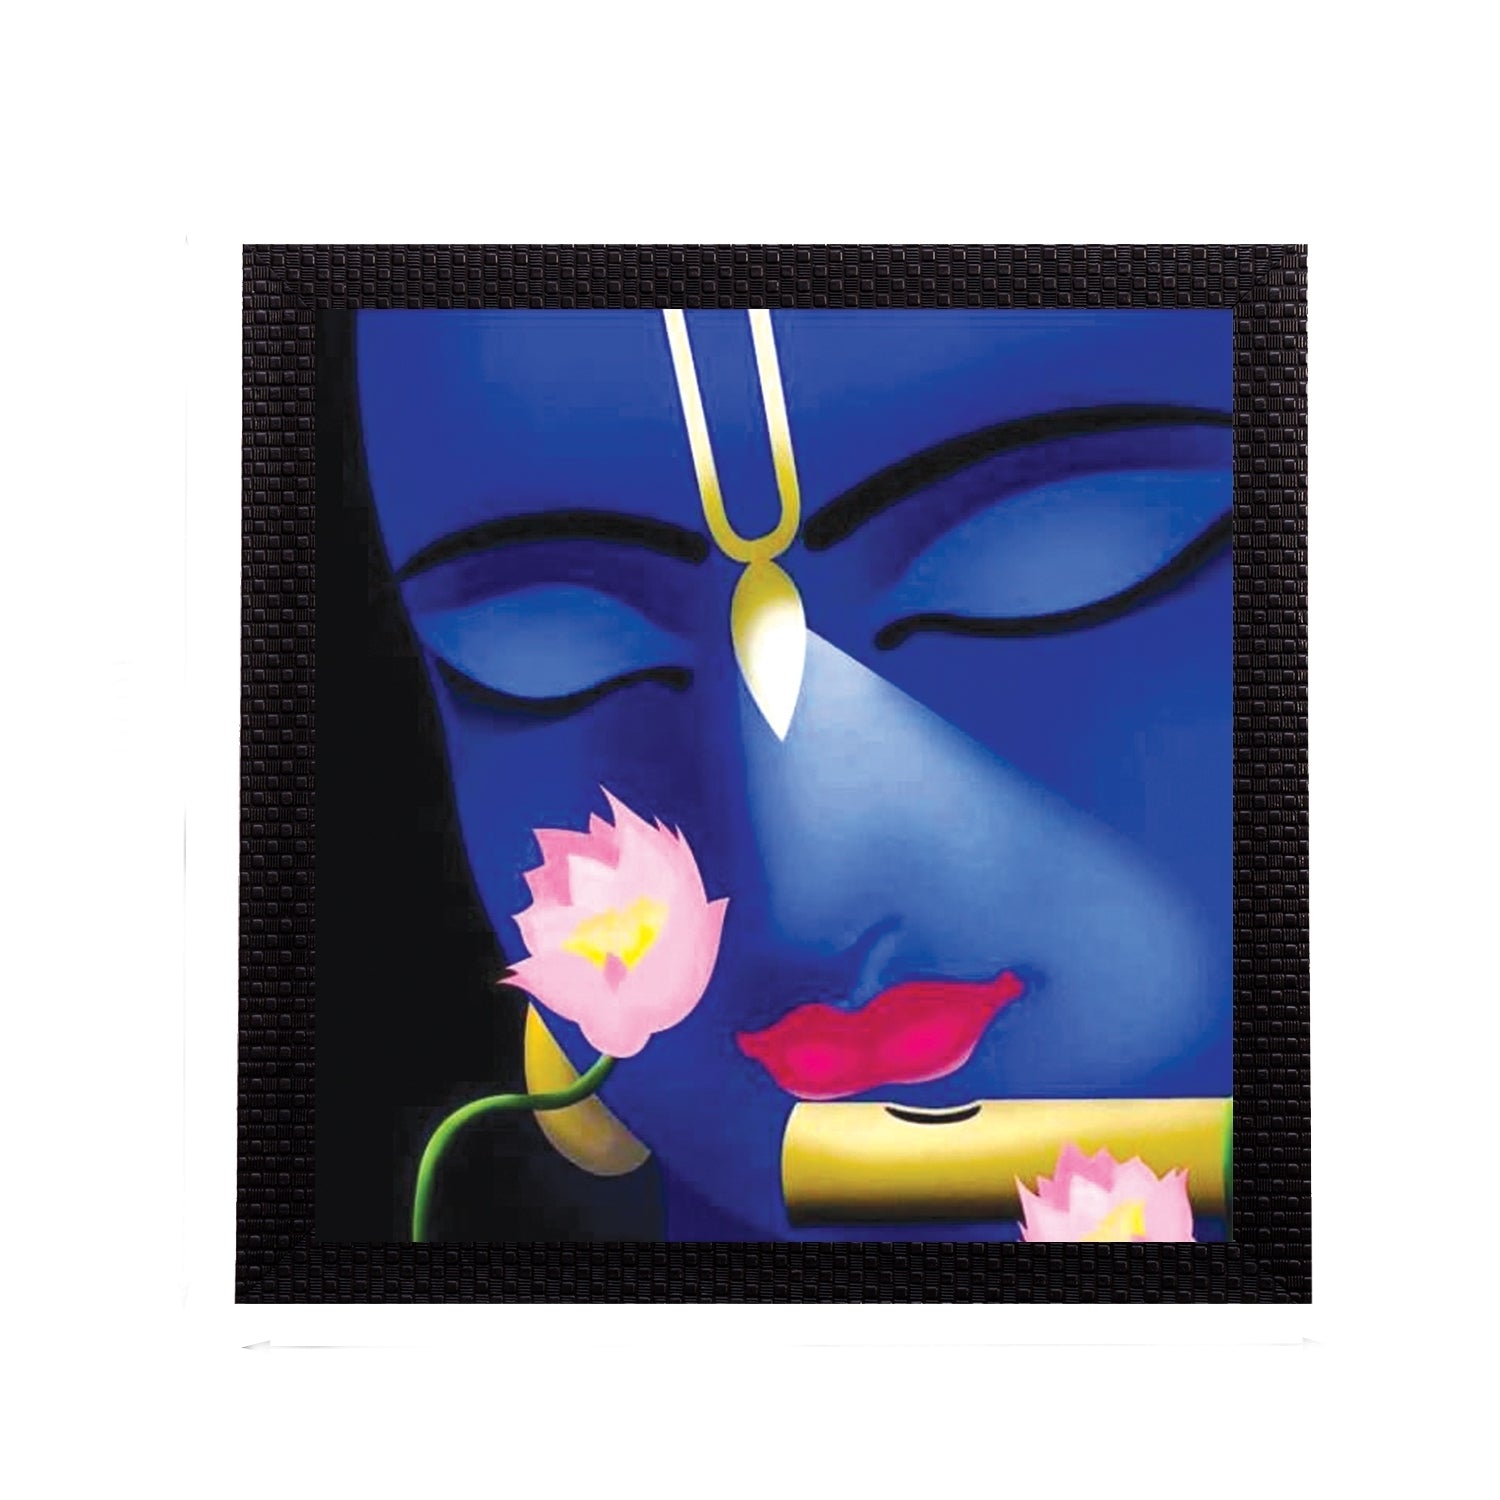 Enlightening Krishna Satin Matt Texture UV Art Painting